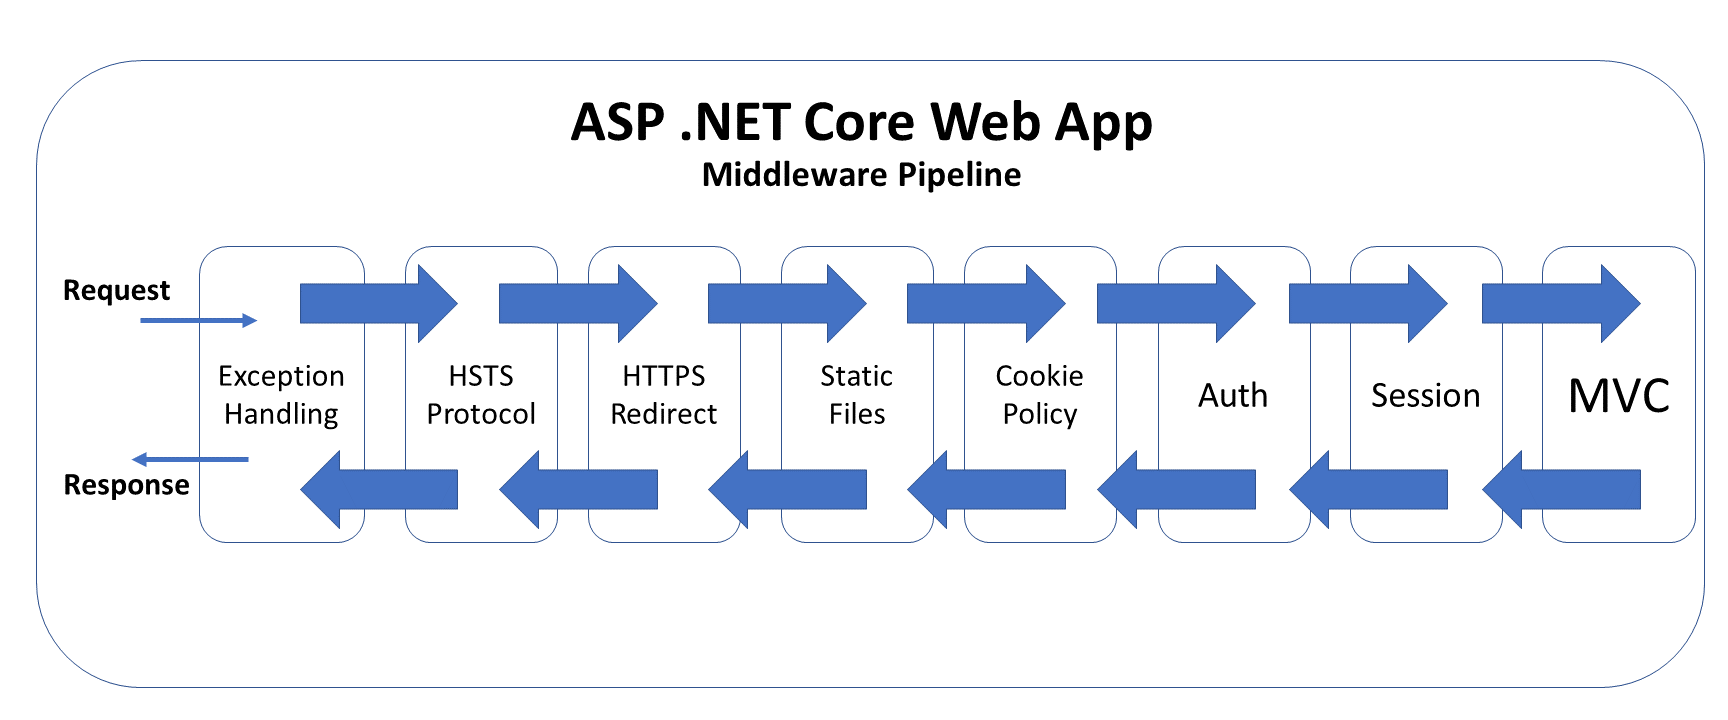 ASP.NET Core Web App Middleware Pipeline